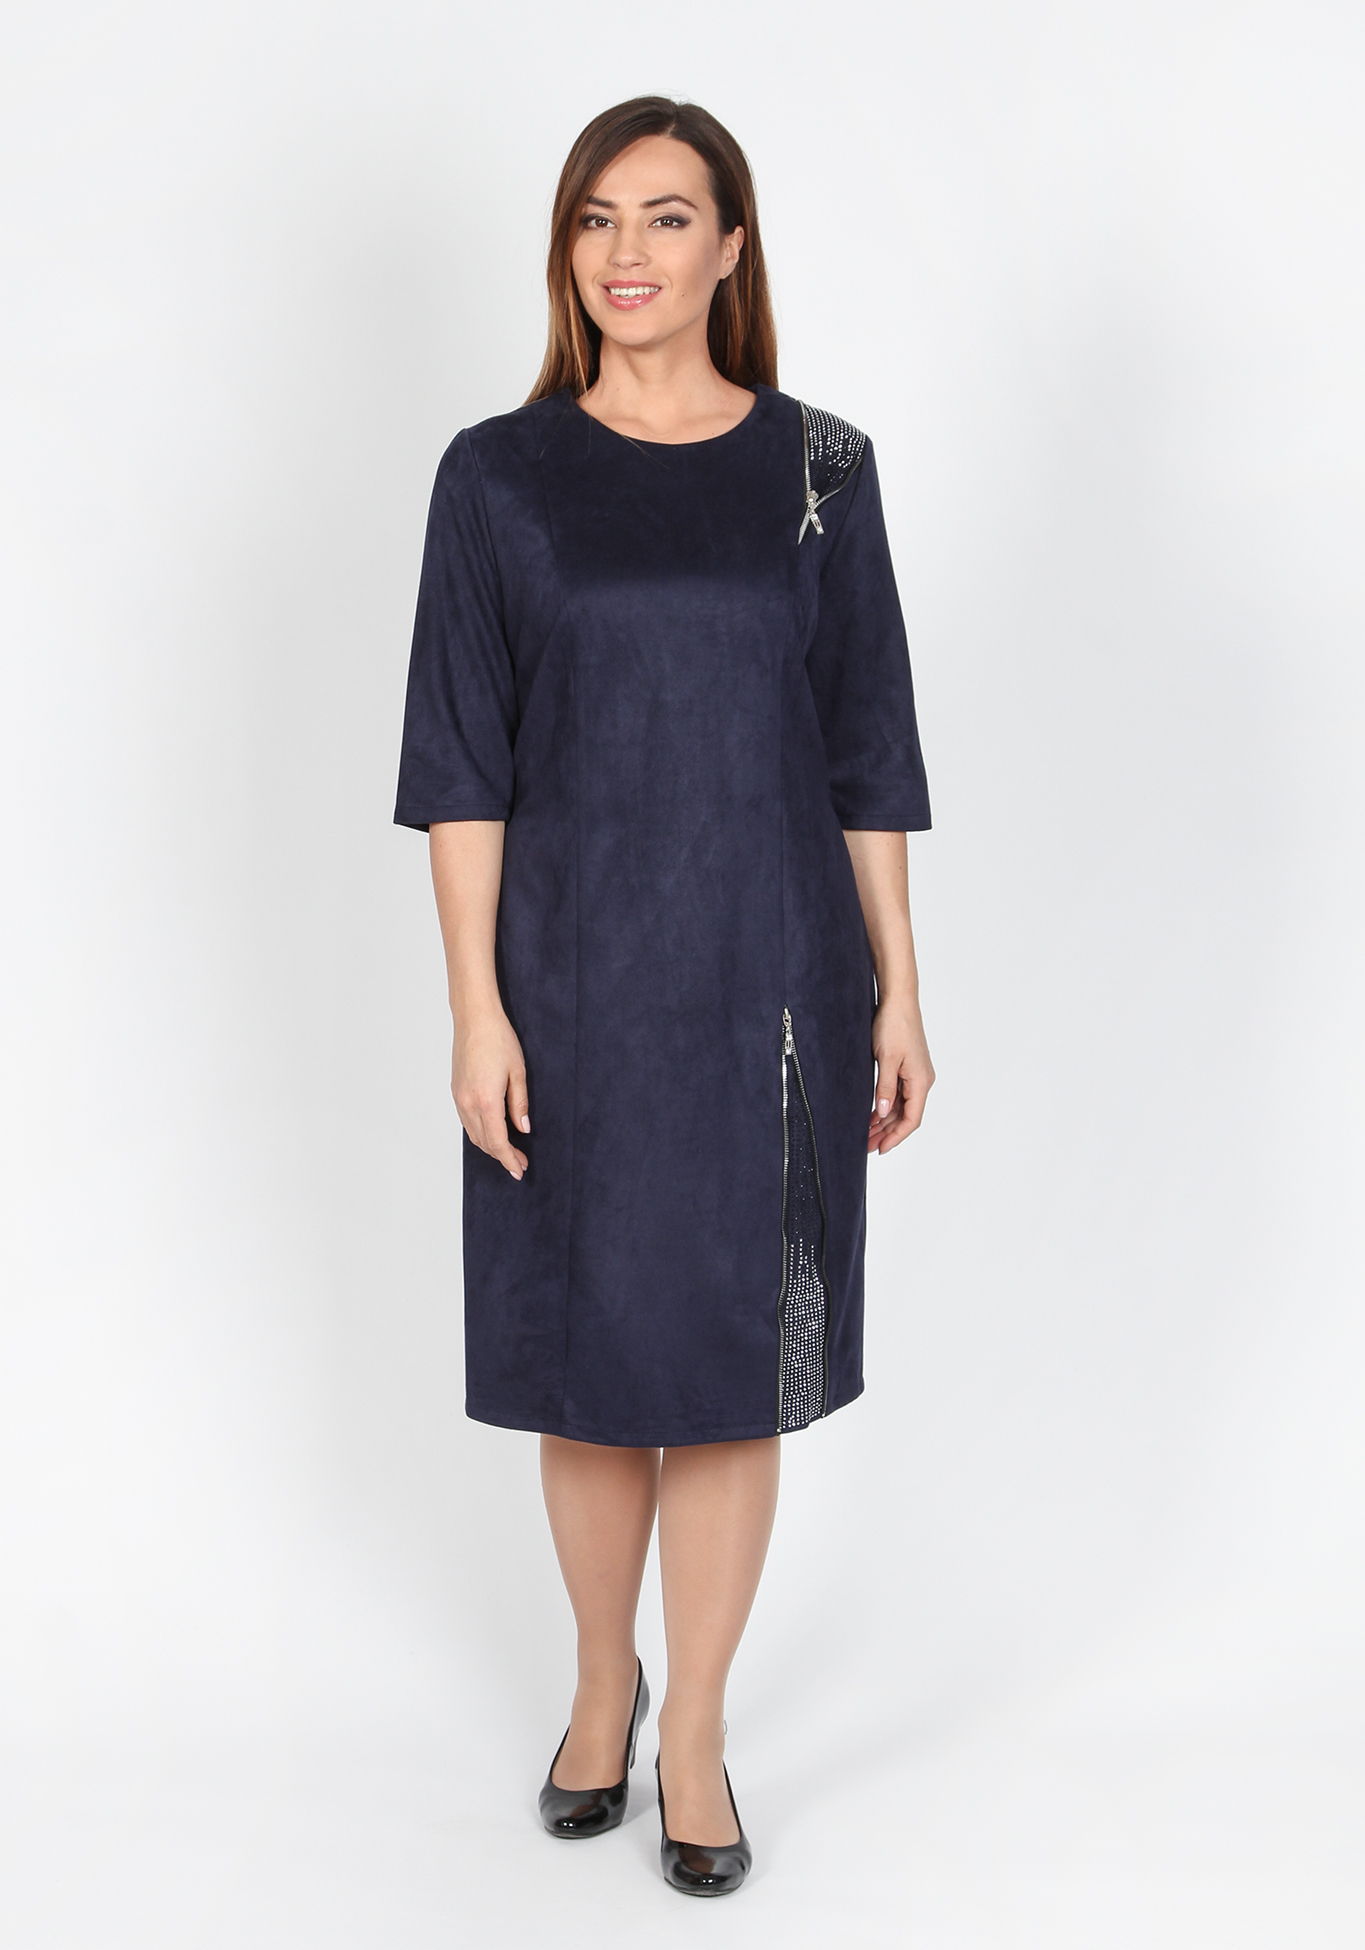 Платье «Серебряные брызги», размер 52, цвет темно-синий - фото 2